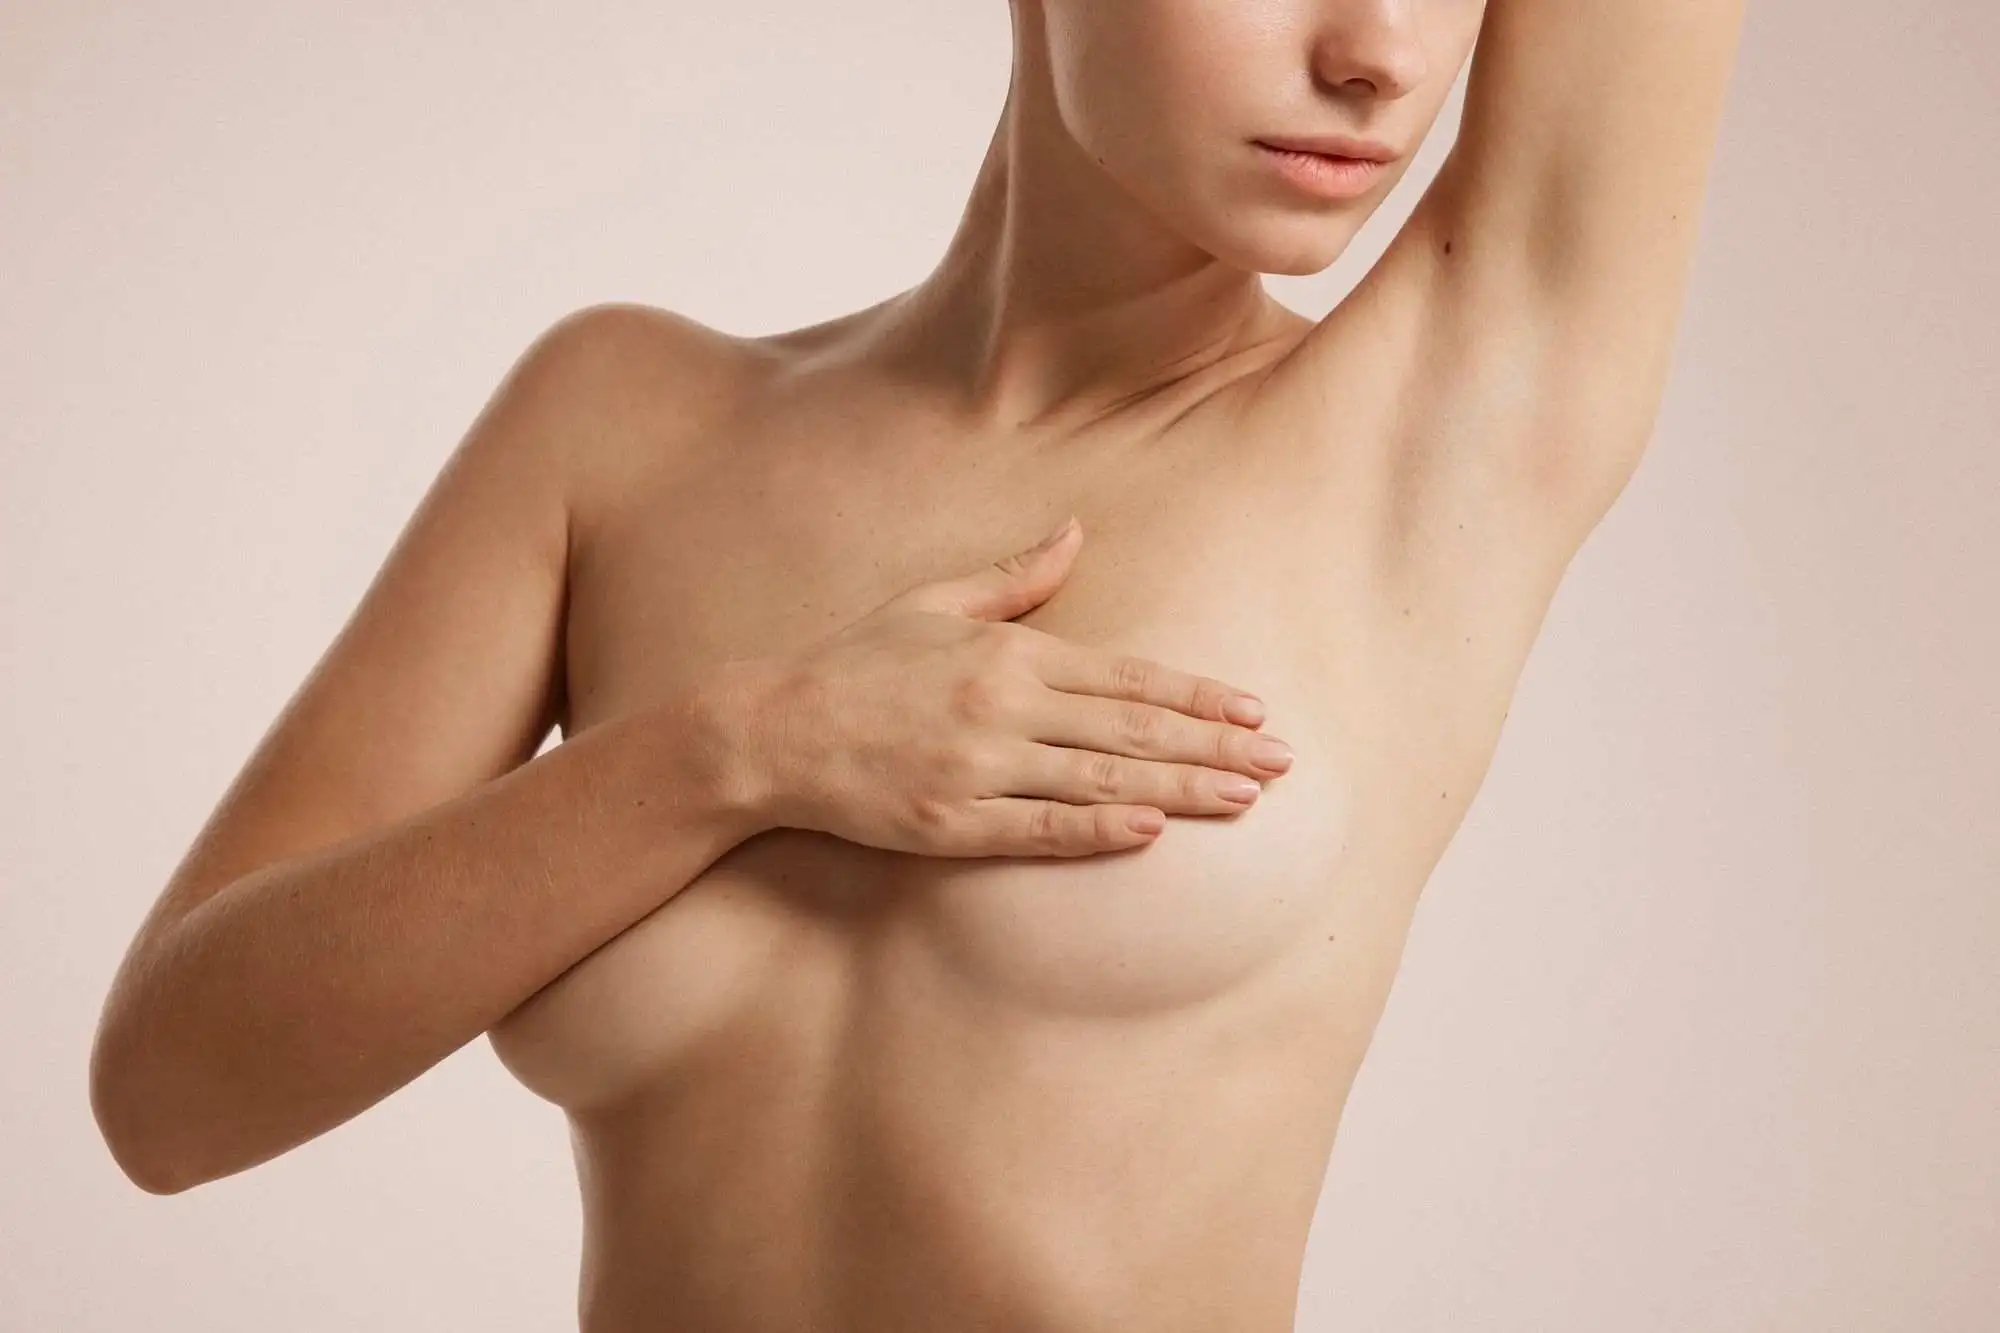 Breast Lump Treatment Cost in Riyadh